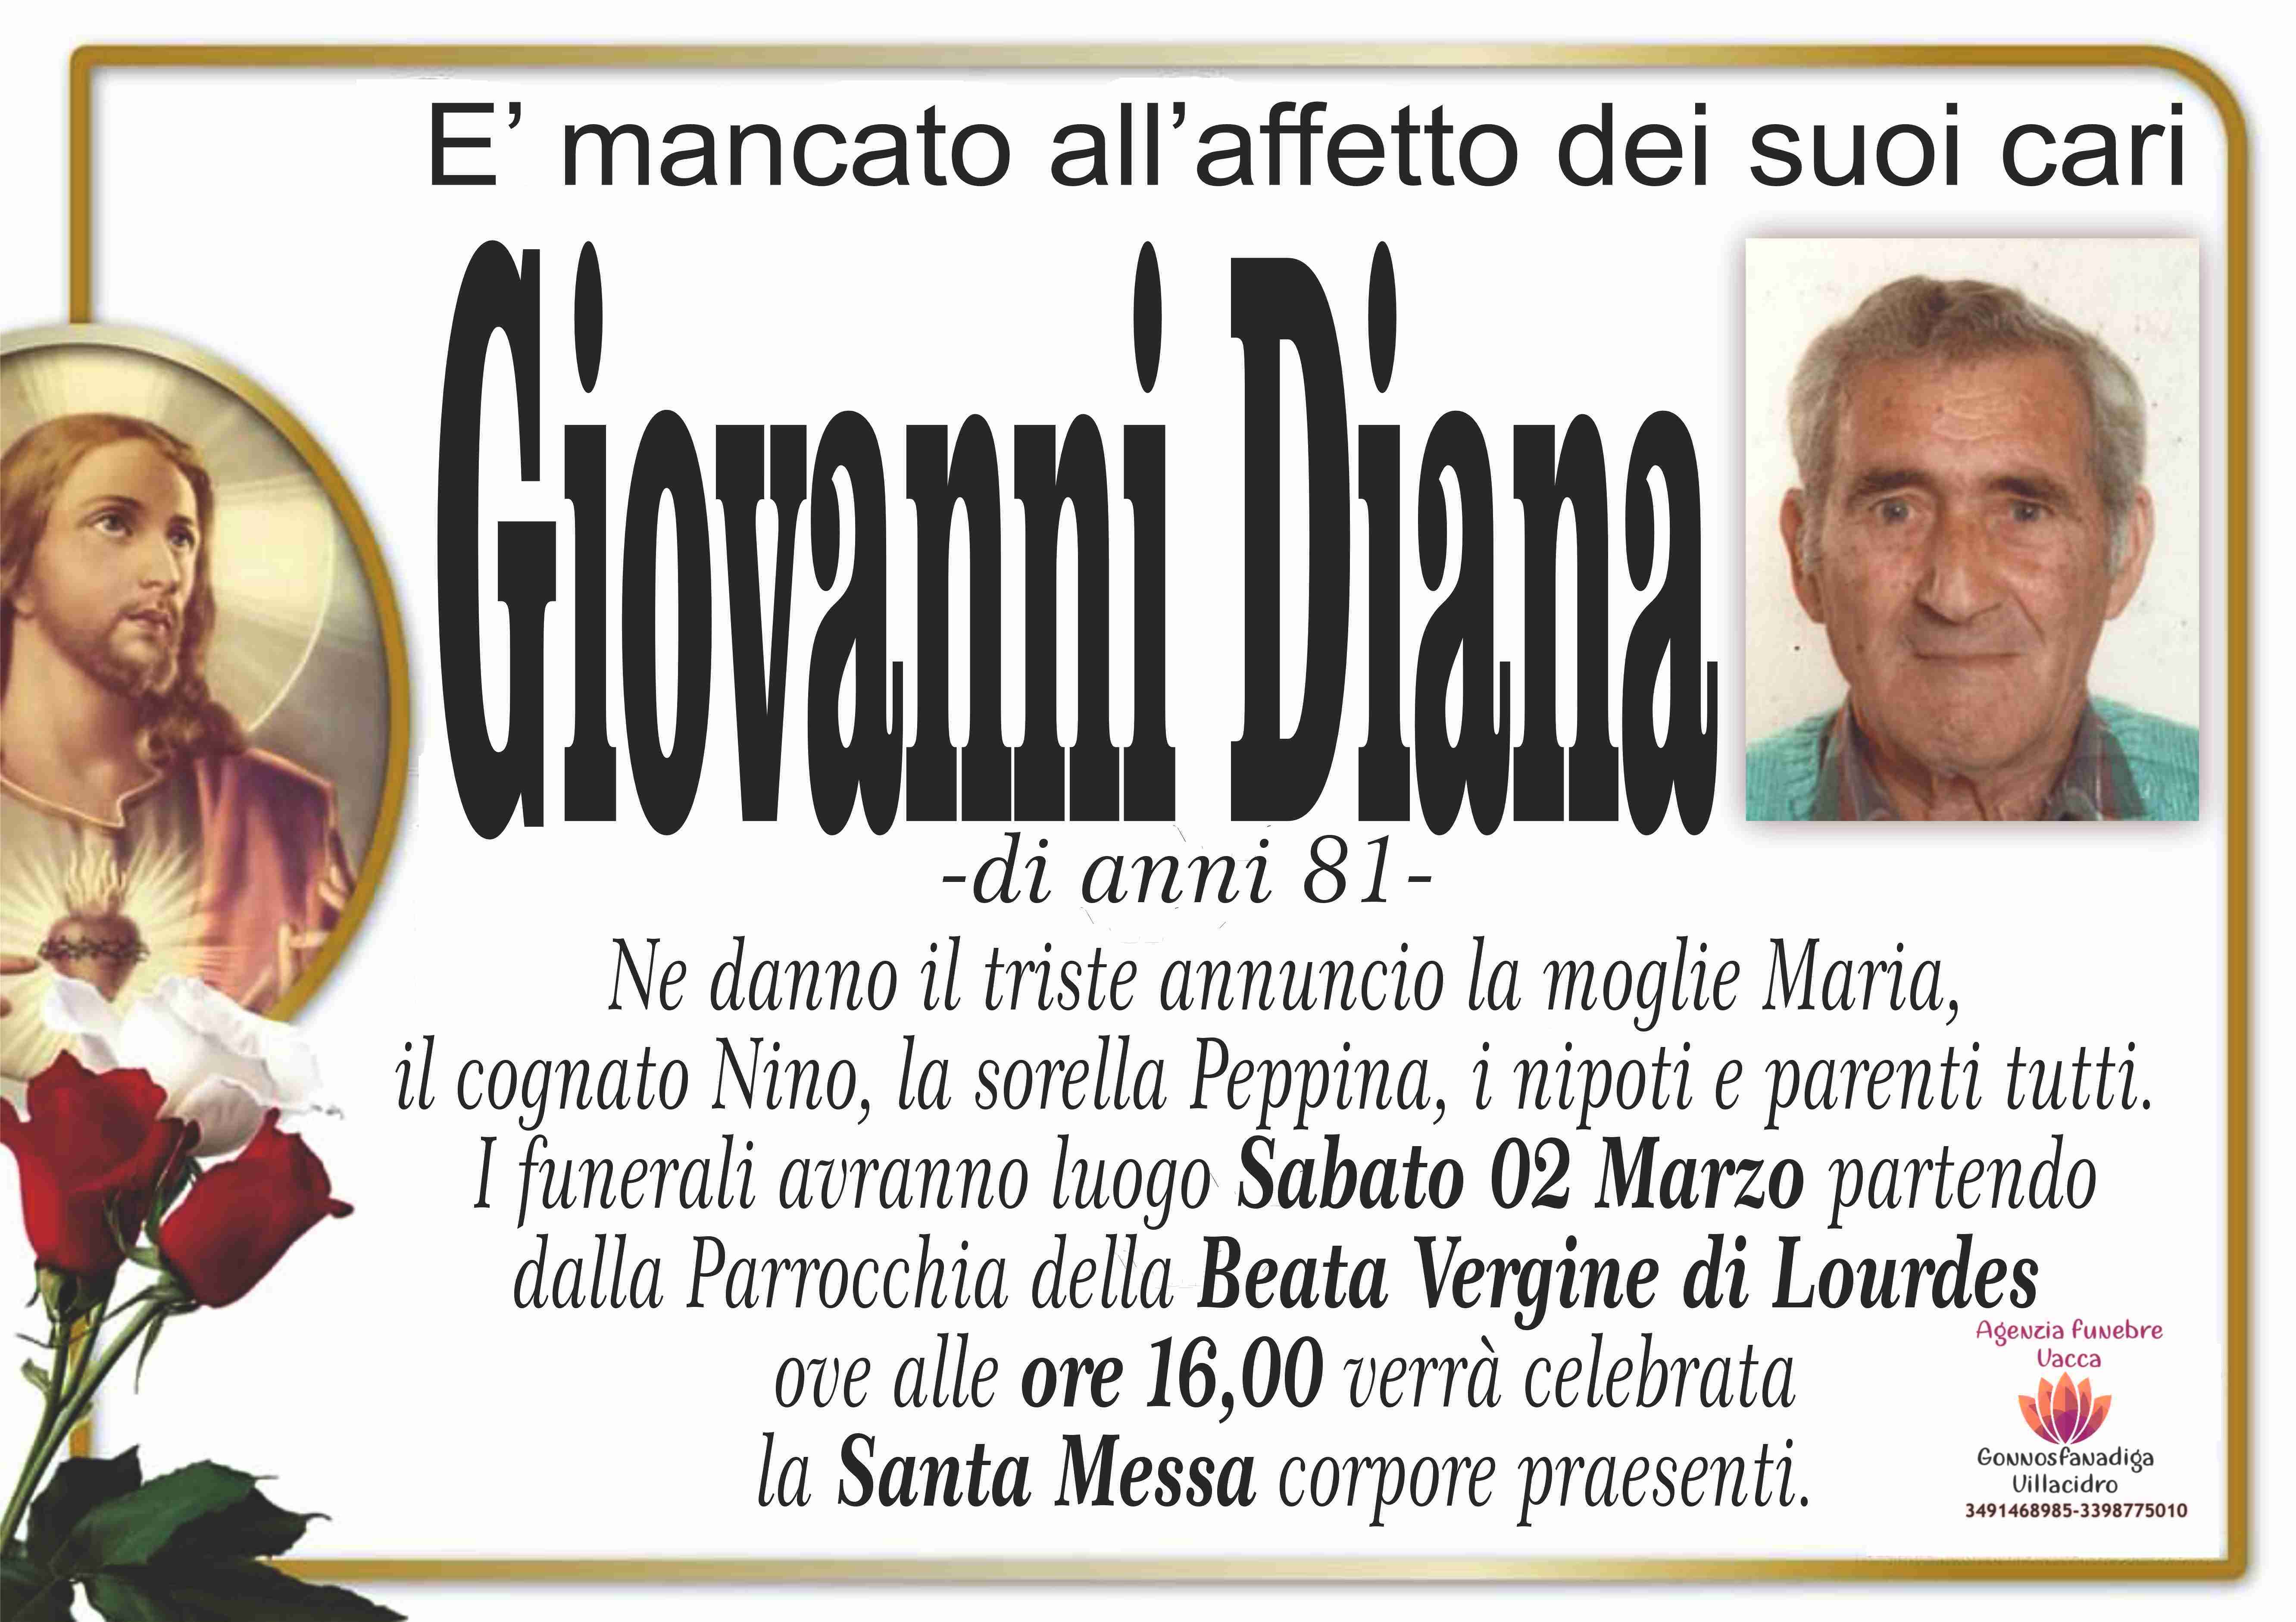 Giovanni Diana